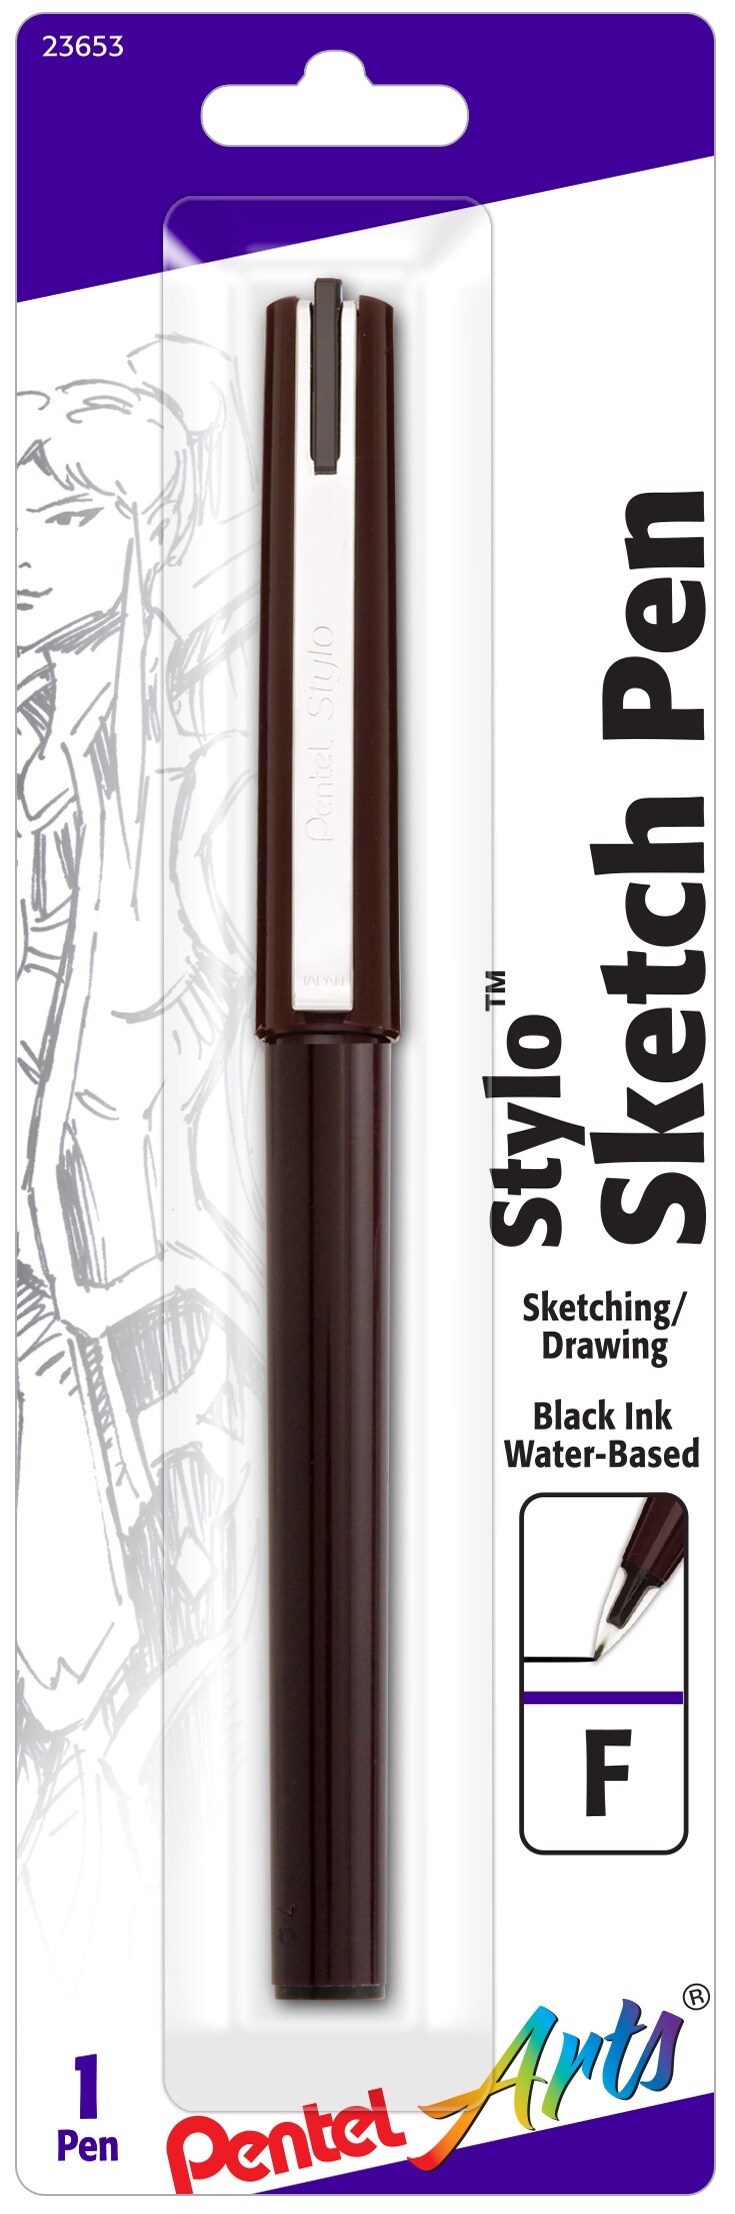 Stylo Sketch Pen